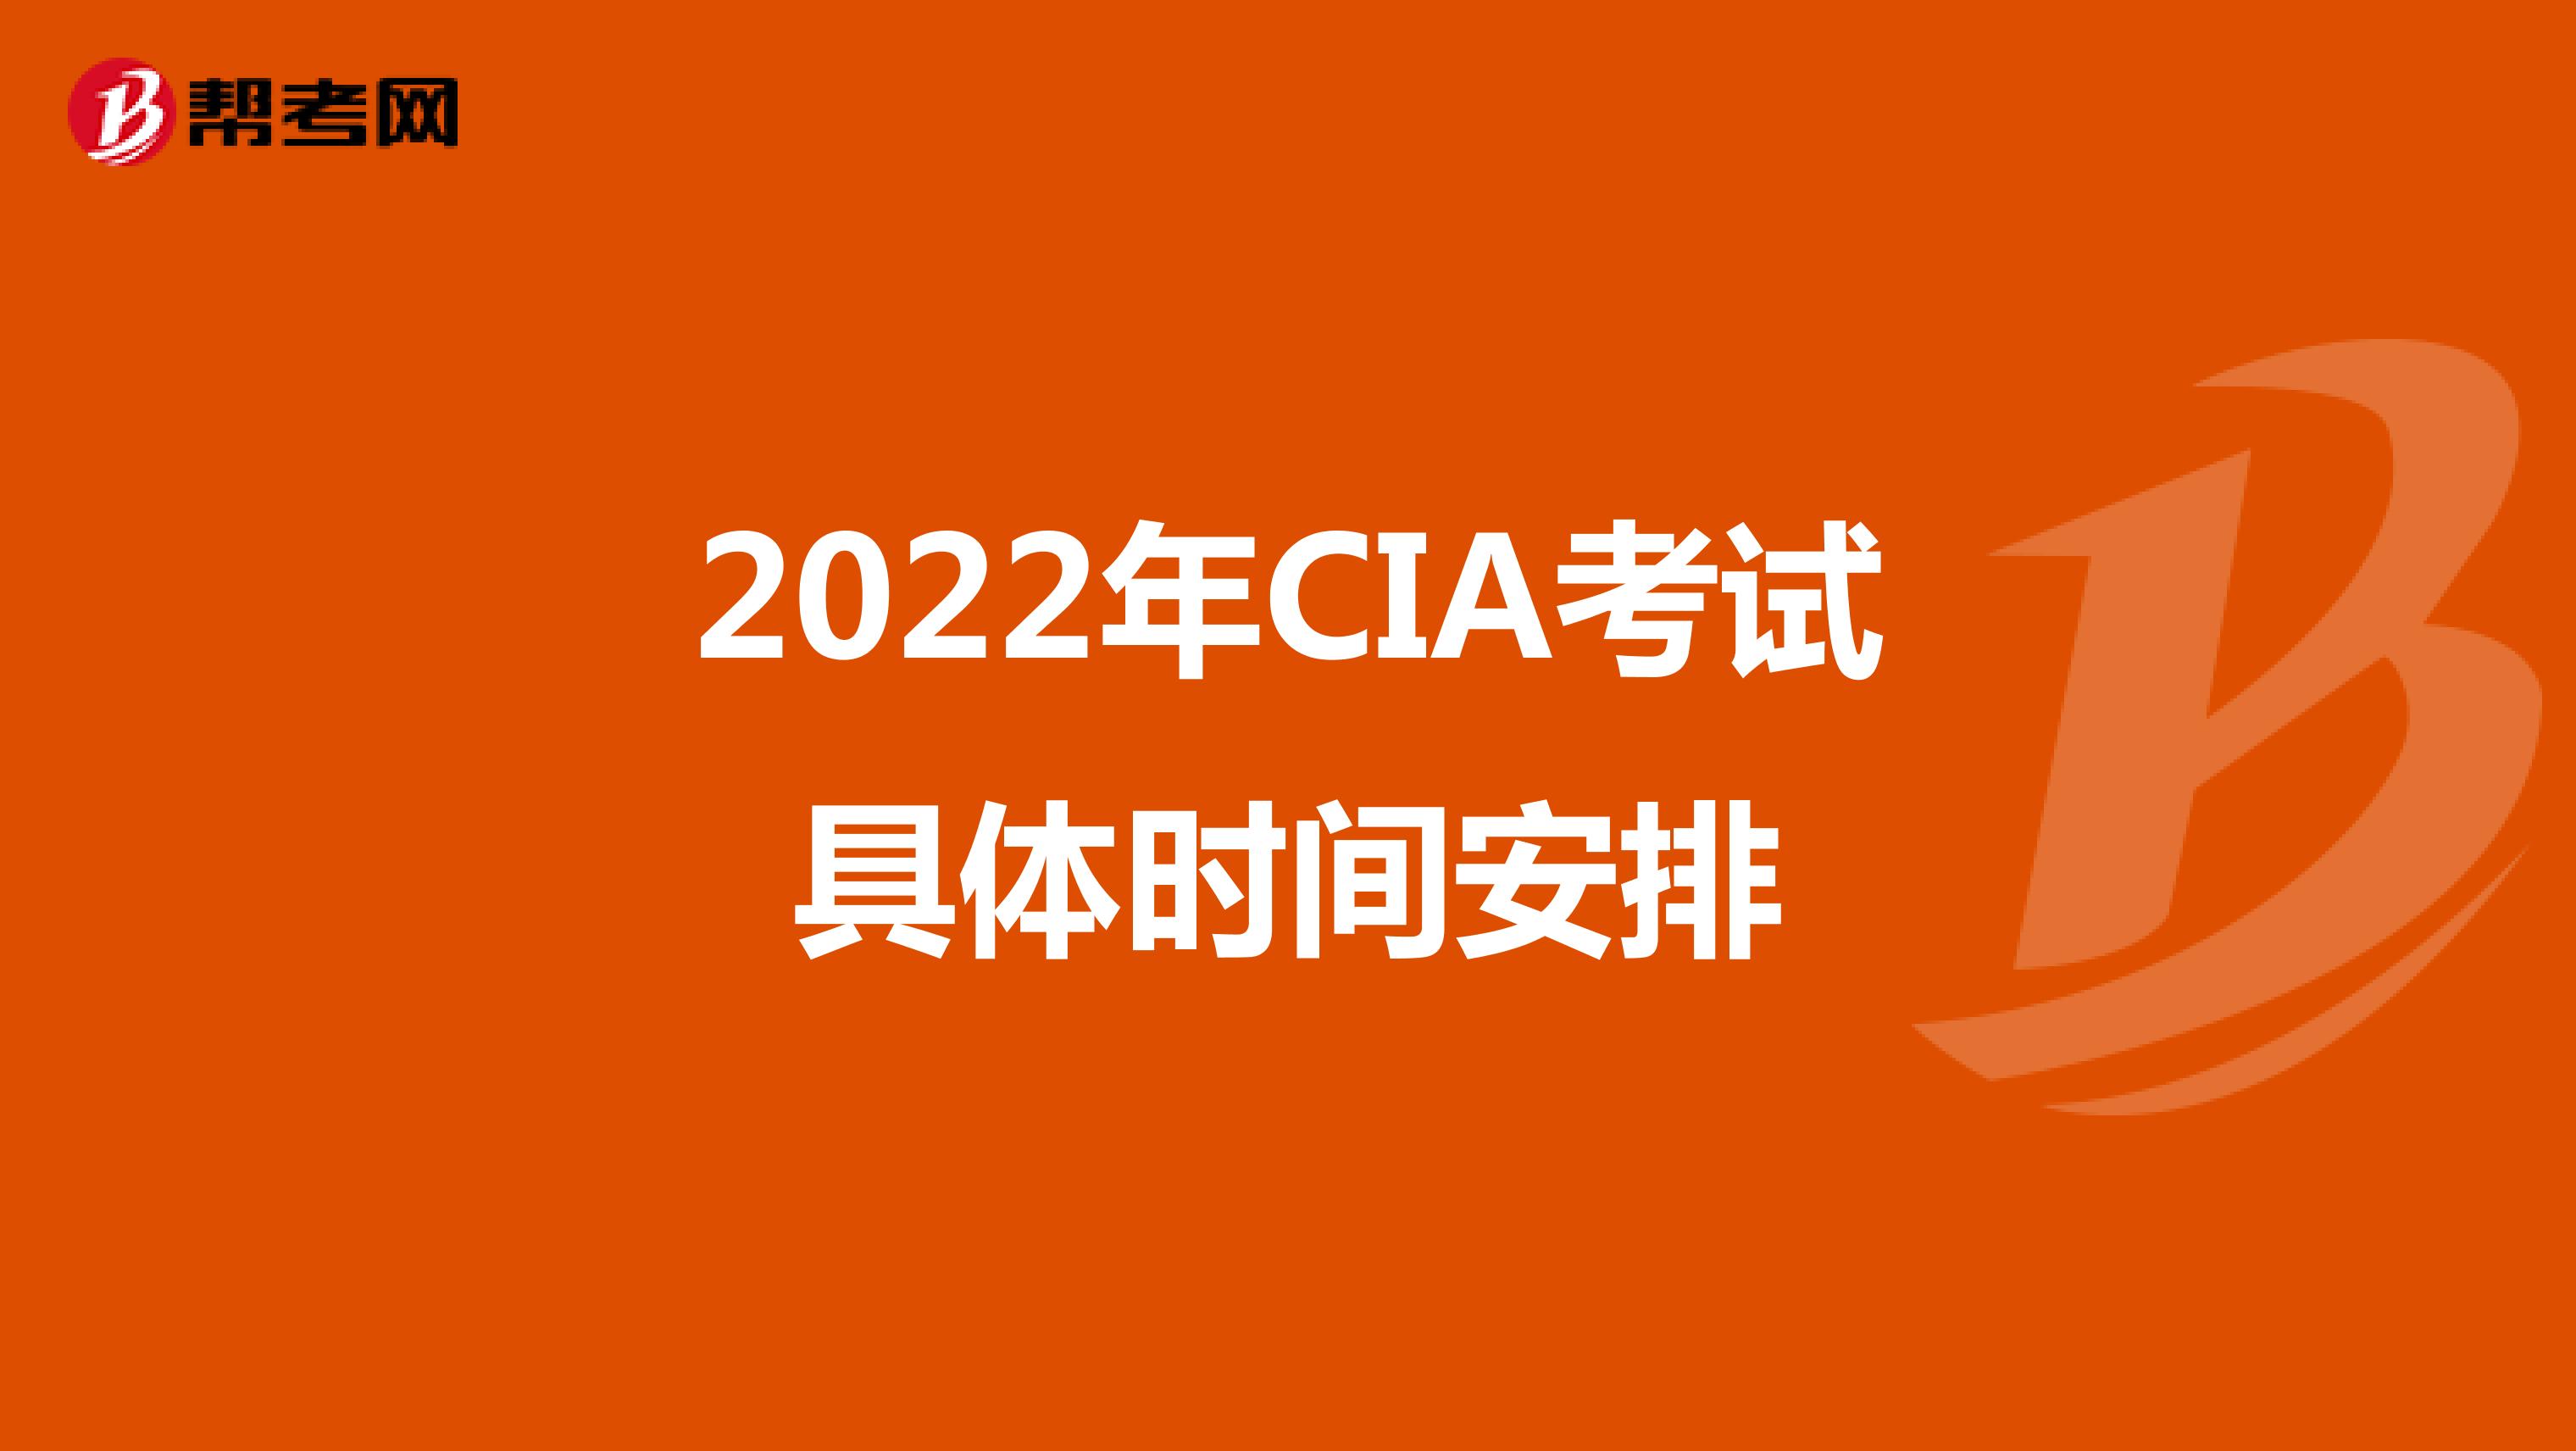 2022年CIA考试具体时间安排